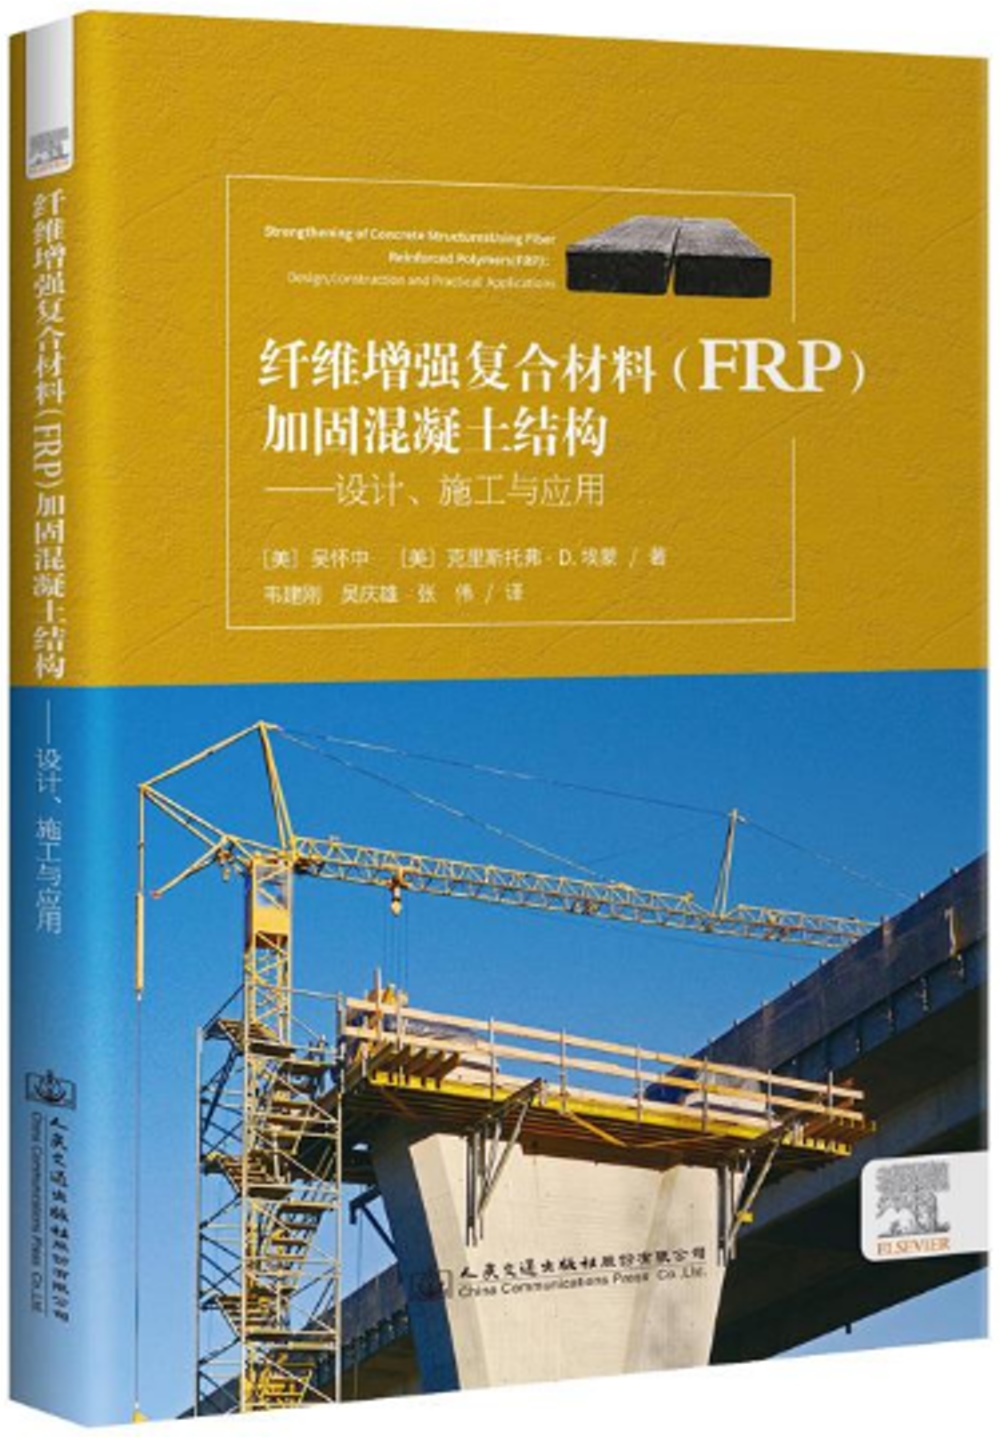 纖維增強複合材料（FRP）加固混凝土結構：設計、施工與應用